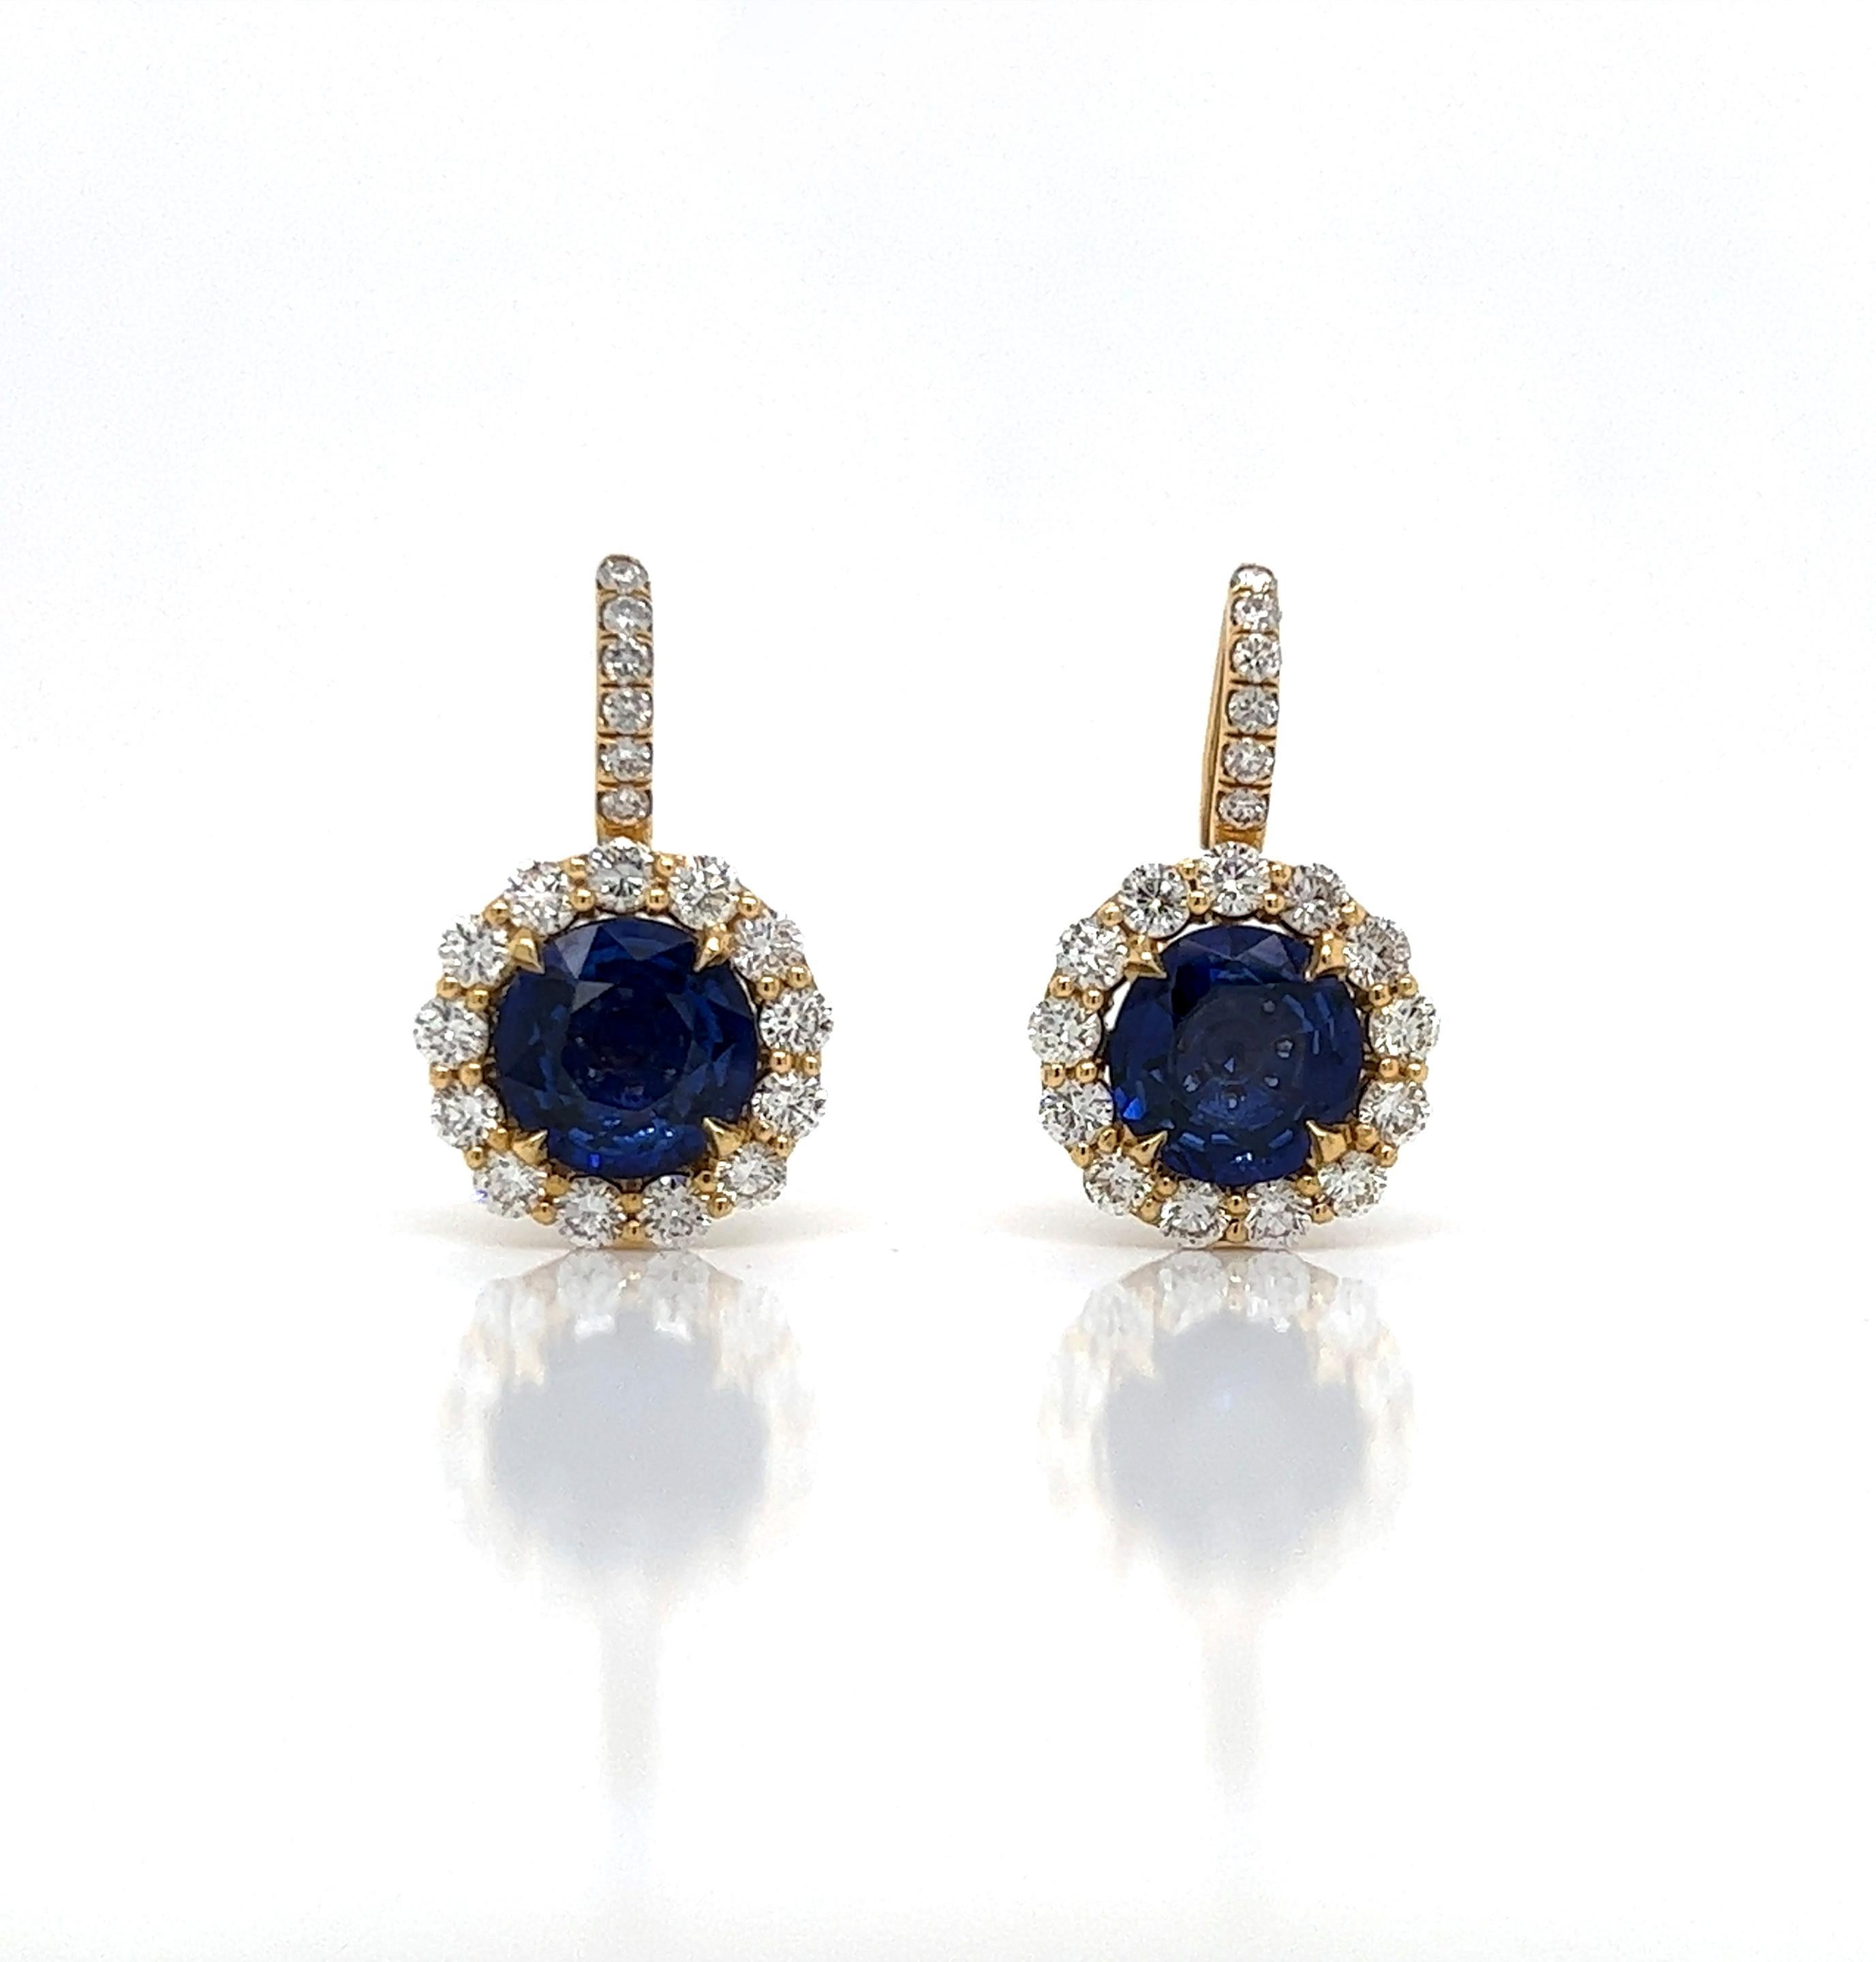 6.23 Karat Blauer Saphir und Diamant Halo Pave Ohrringe aus 18K Gold

Diese glamourösen Saphir-Ohrringe werden in perfekter Handarbeit aus den feinsten Diamanten, Saphiren und hochwertigem Gold gefertigt. Die Ästhetik der blauen Saphire, die von